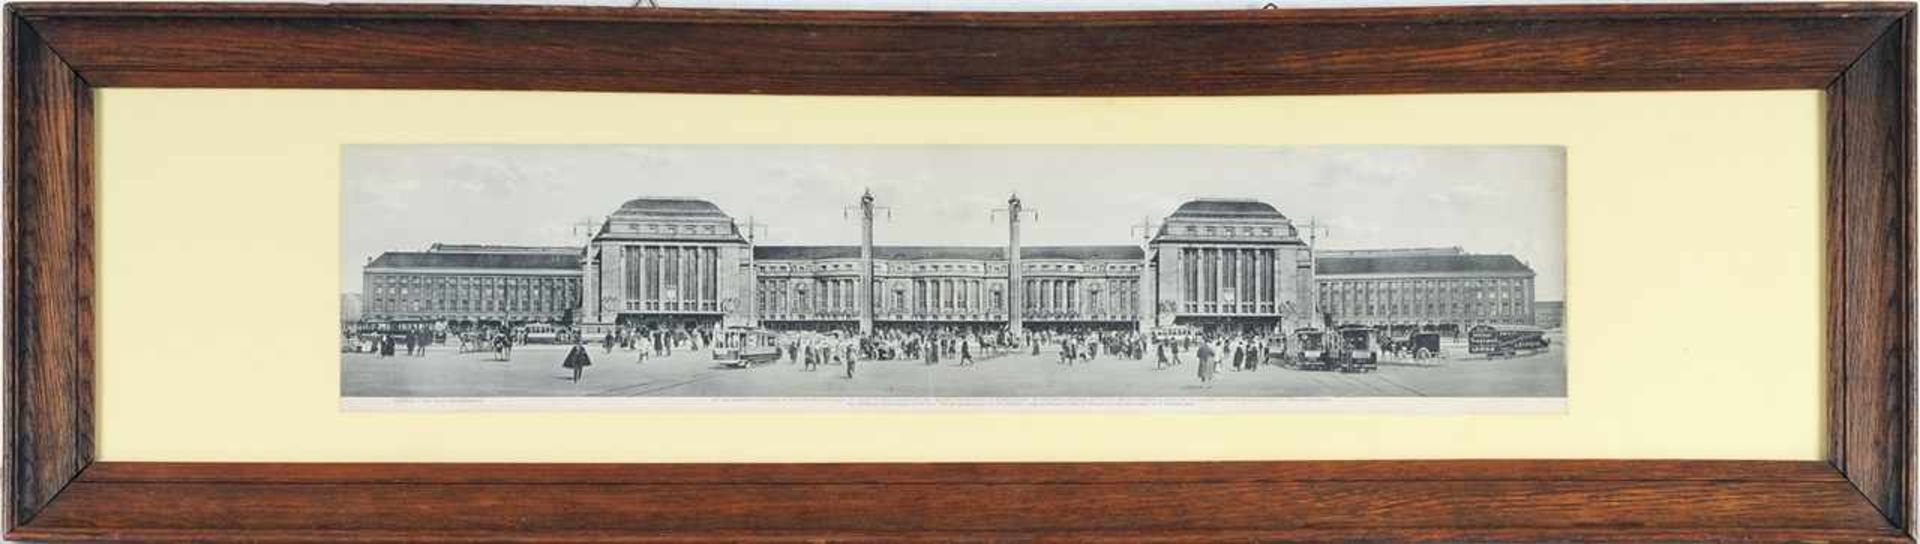 Historische Ansicht Leipziger Hauptbahnhof Druck nach einer Fotomontage. Frontaler Blick auf den